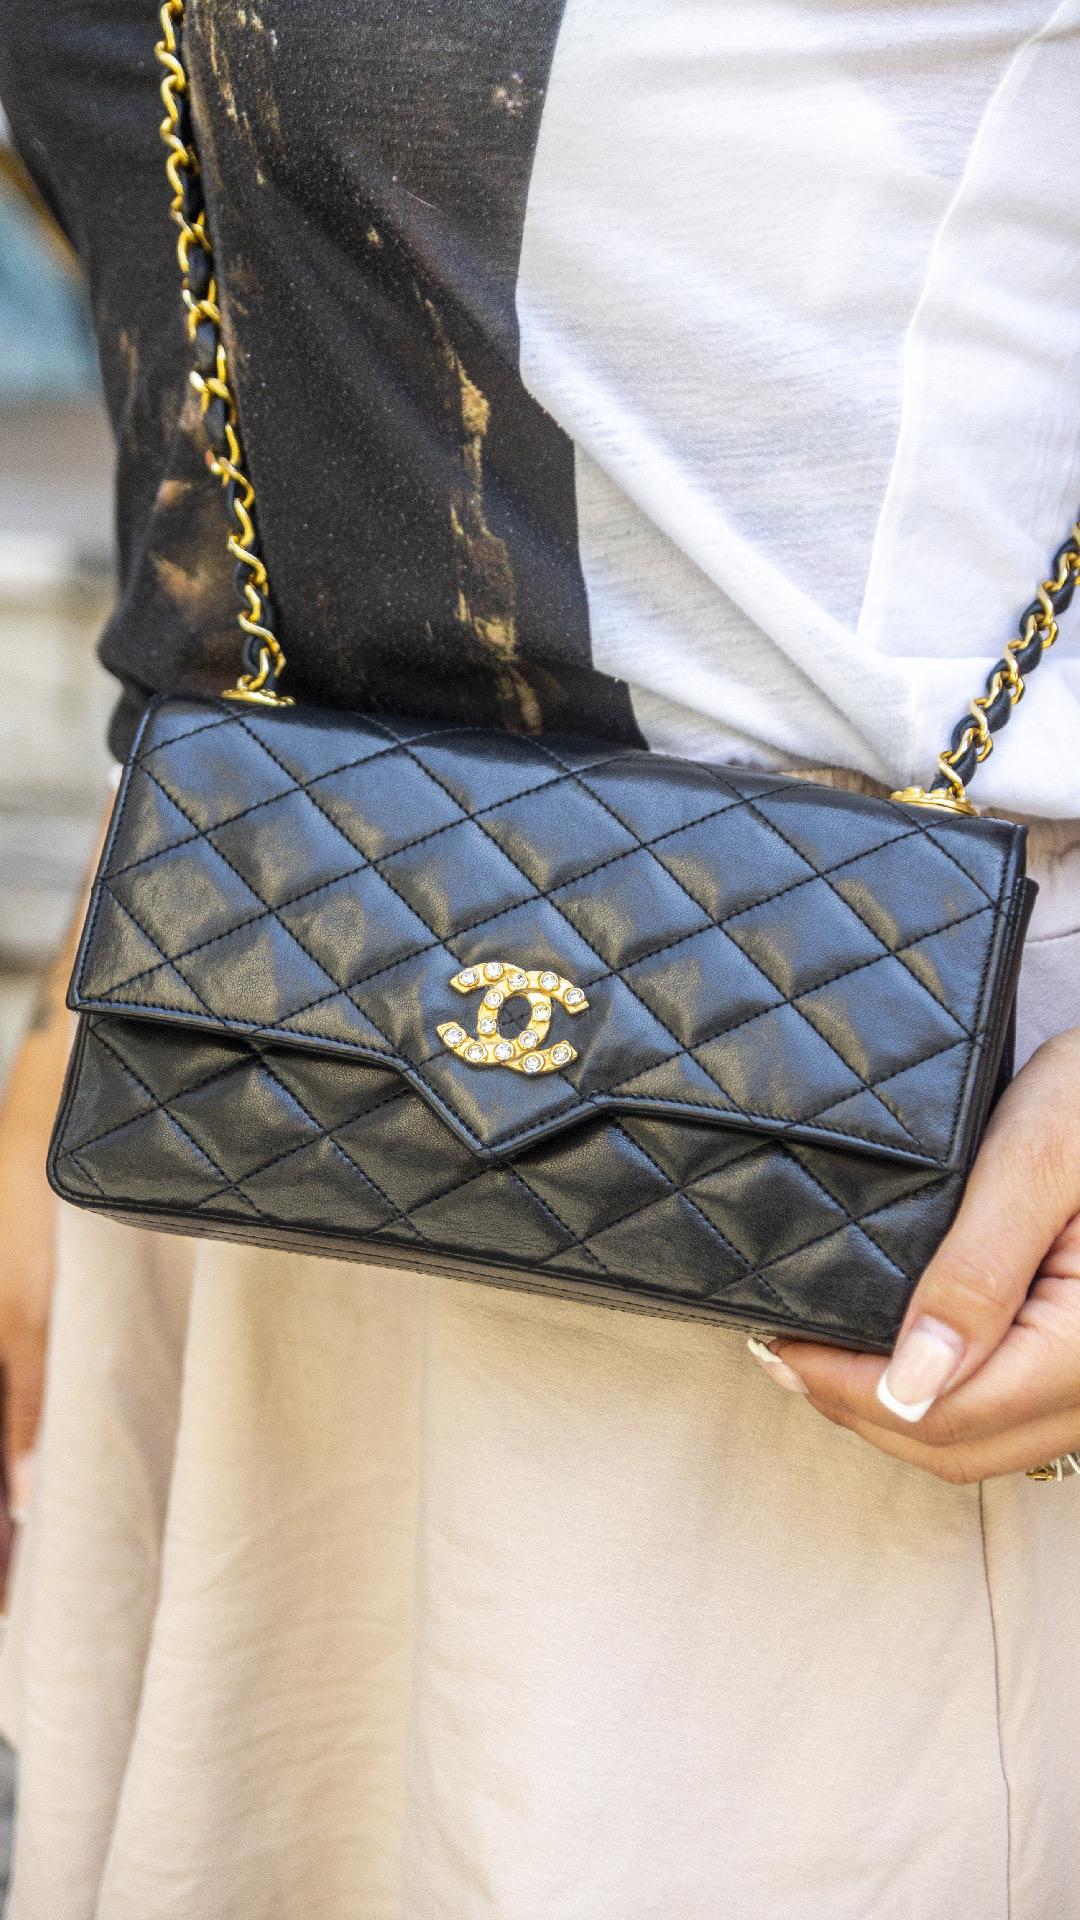 Borsa firmata Chanel, modello Woc vintage, realizzata in pelle nera liscia con hardware dorati. Dotata di una patat con chiusura ad incastro, internamente rivestita in pelle bordeaux, capiente per l’essenziale. Munita di una  tracolla in pelle e